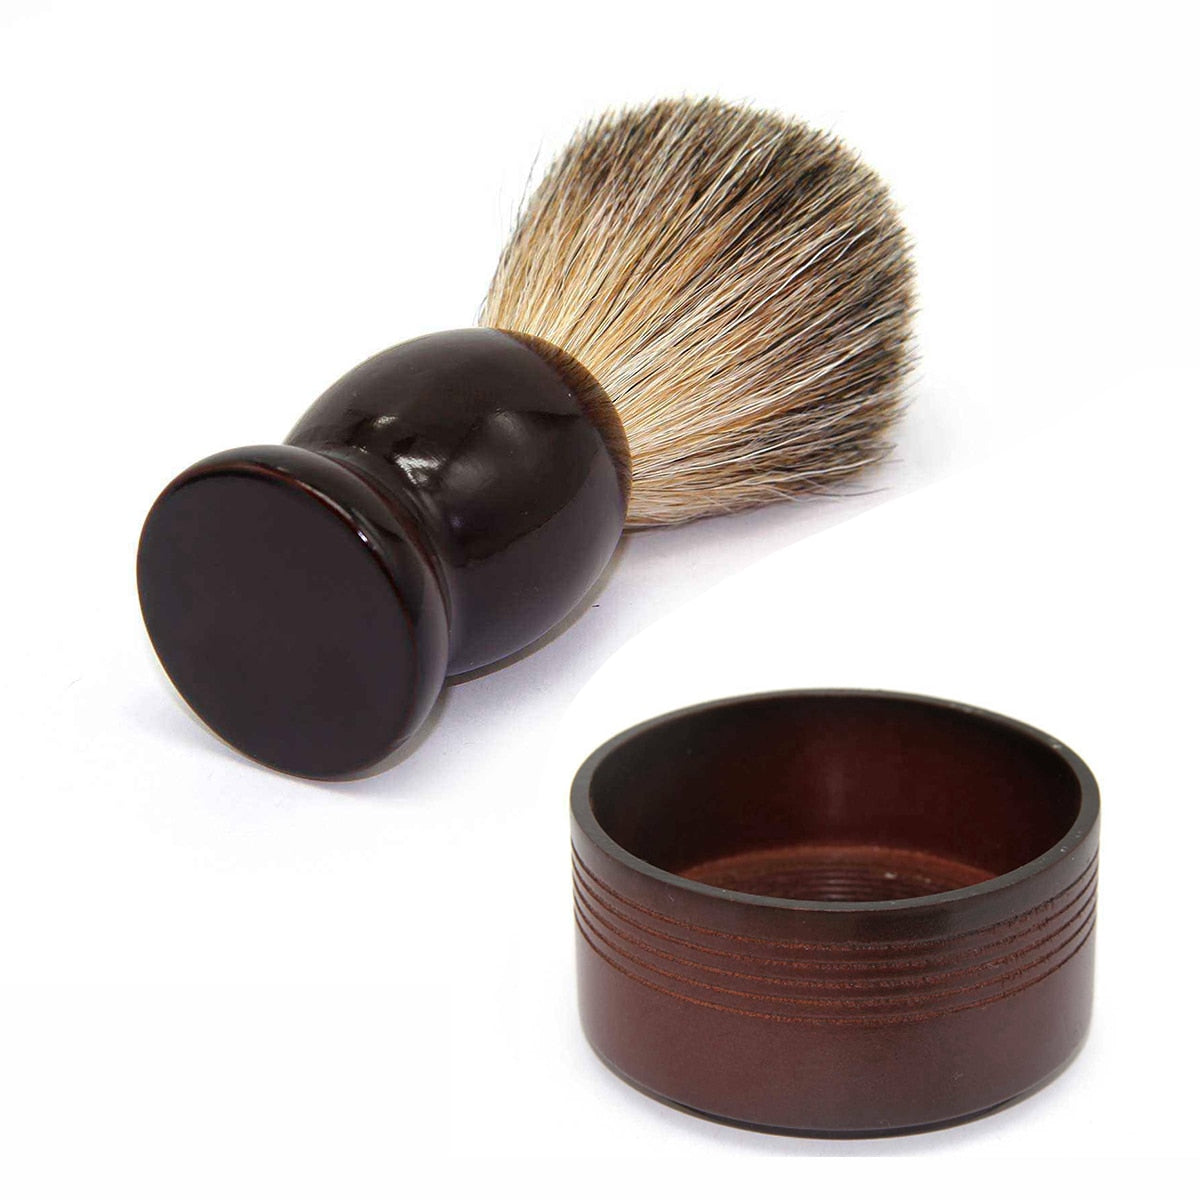 Badger Brush and Wood Bowl Shaving Kit for Men